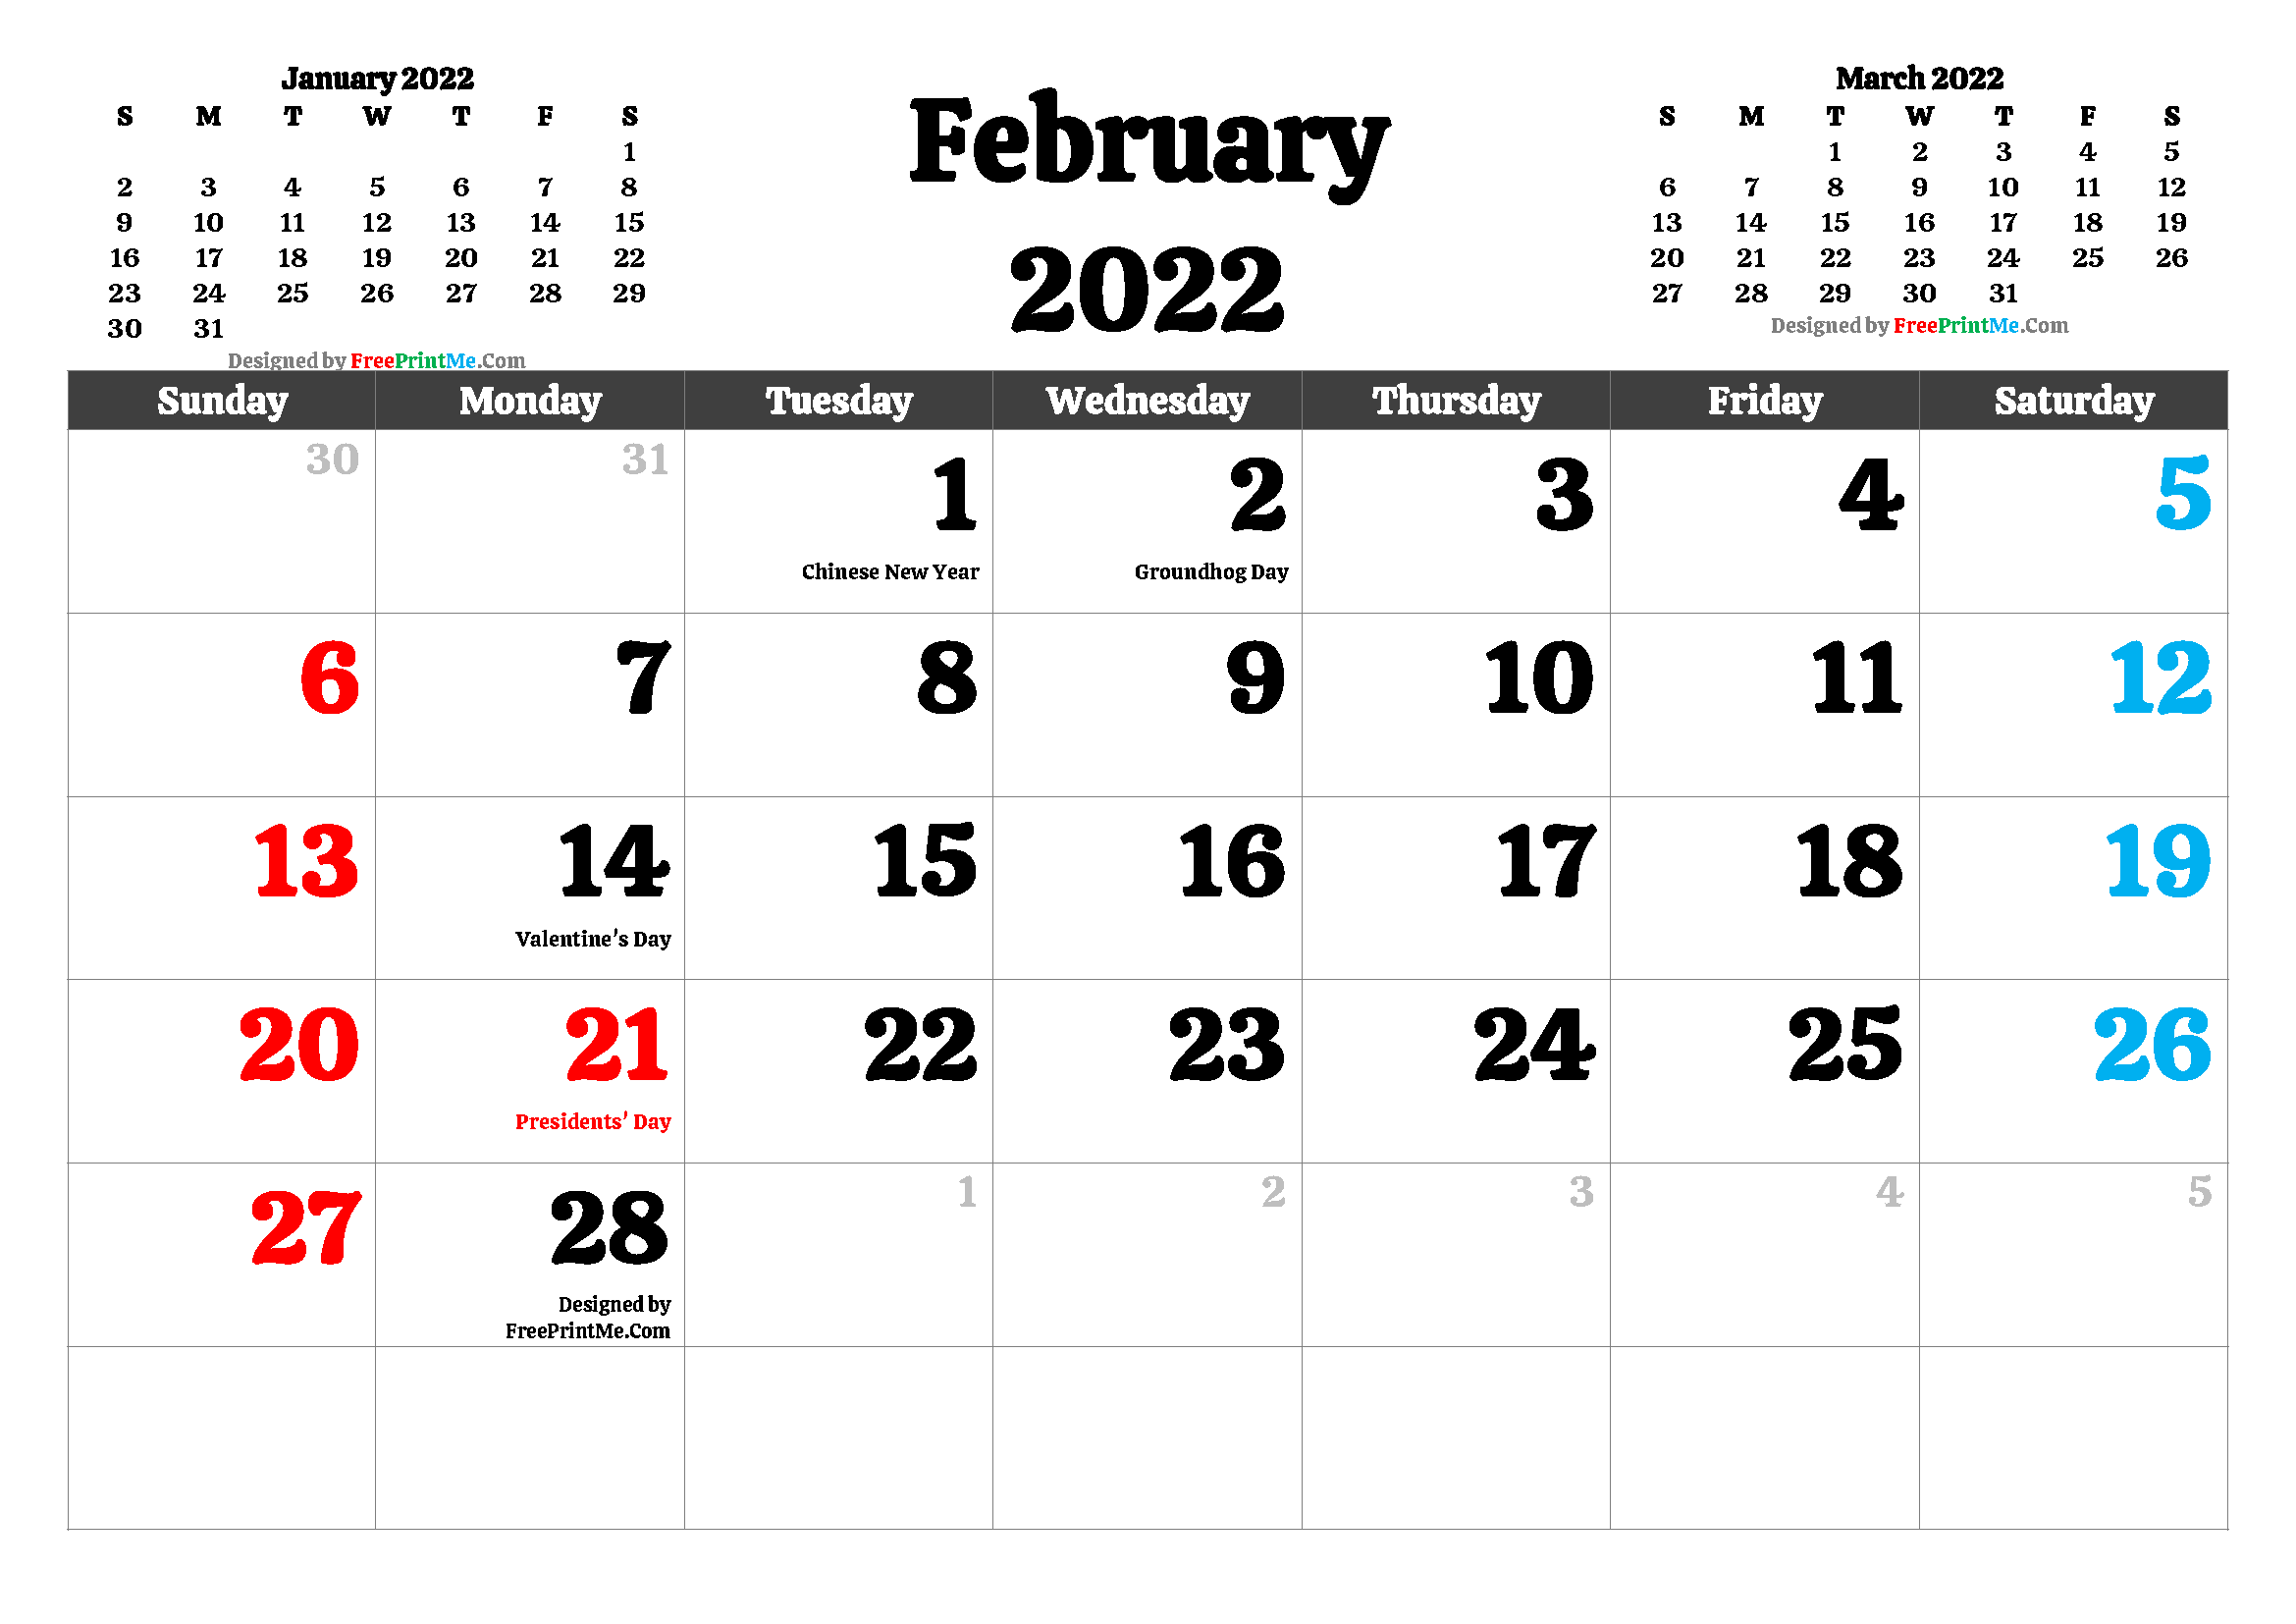 Febrero 2022 Calendar Free Printable February 2022 Calendar Pdf And Image